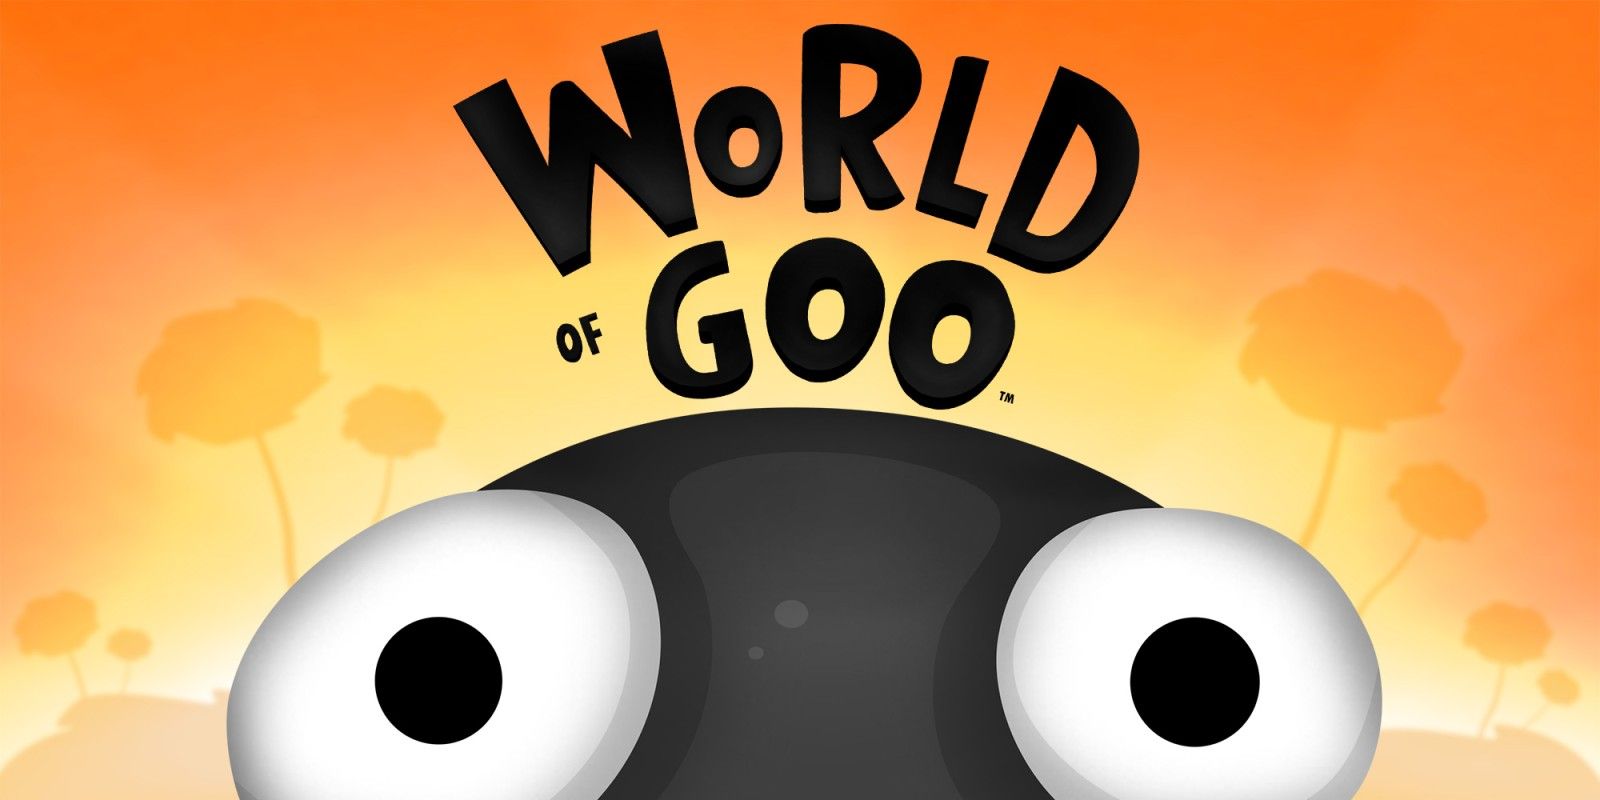 Состоялся релиз ремастера World of Goo на iOS и Android